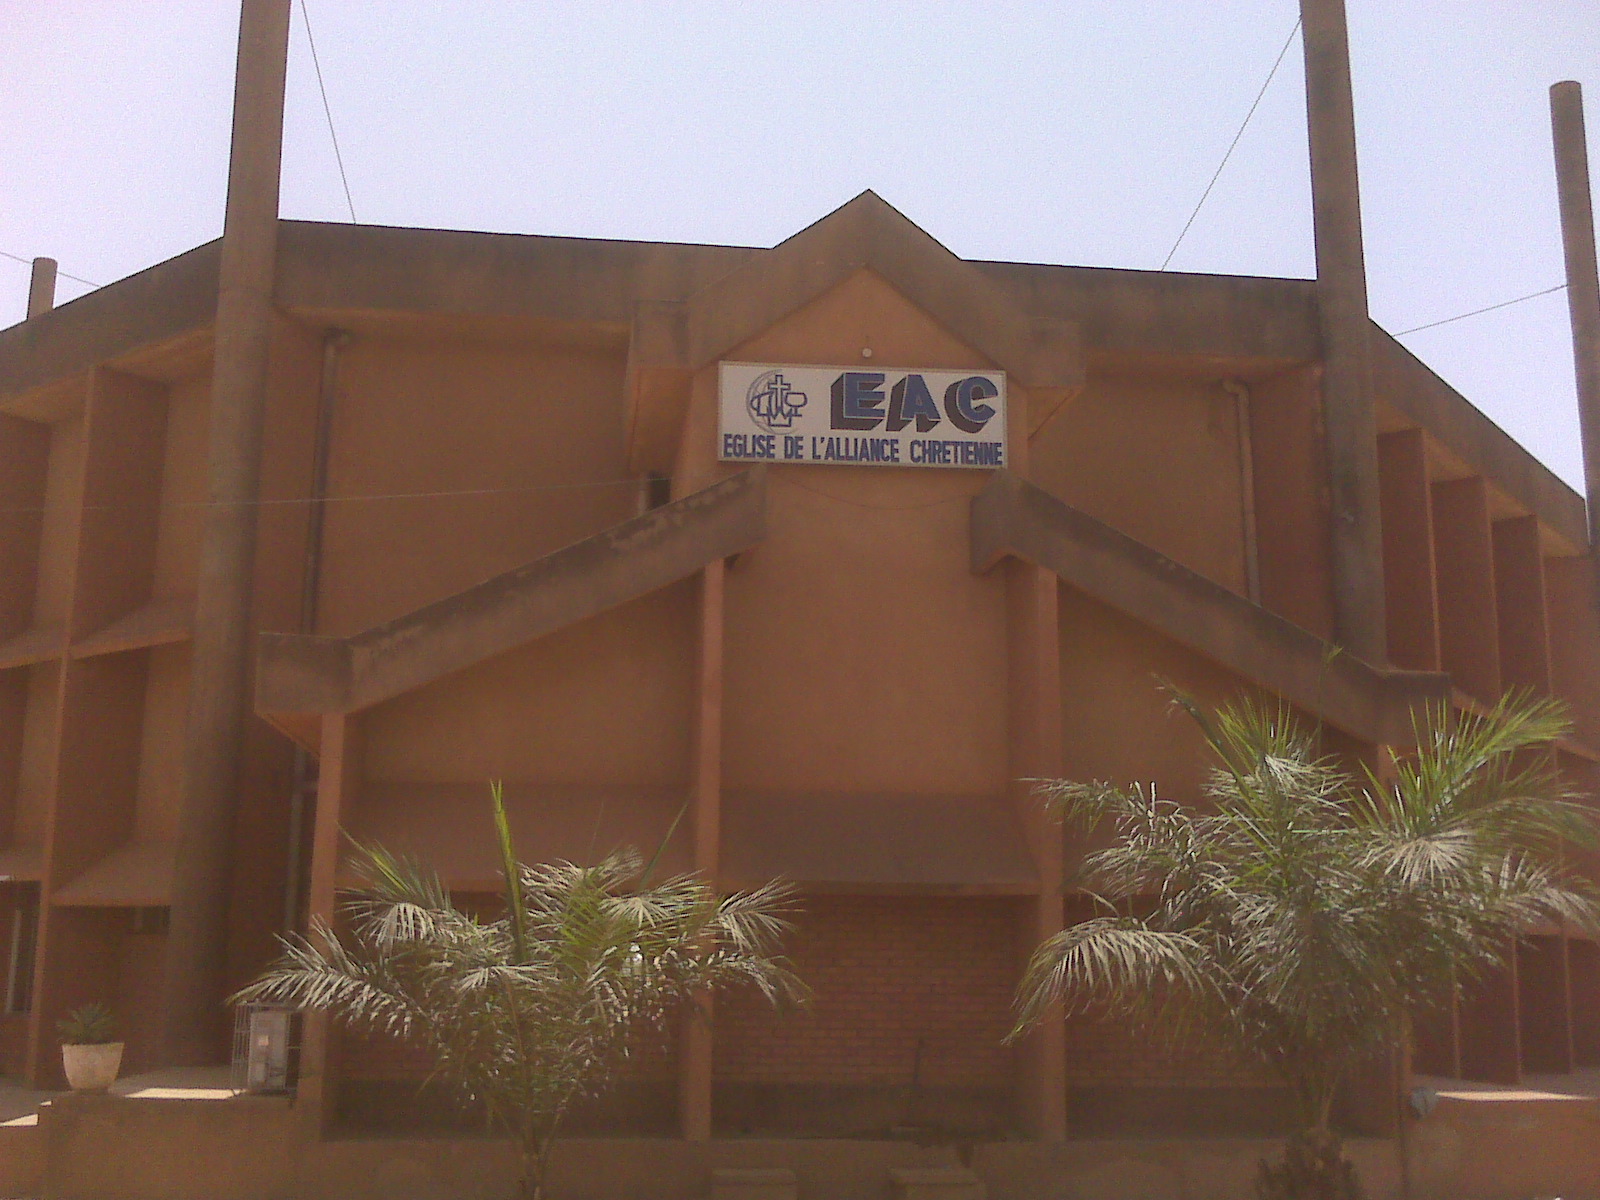 Vue façade de l'église centrale à Ouagadougou